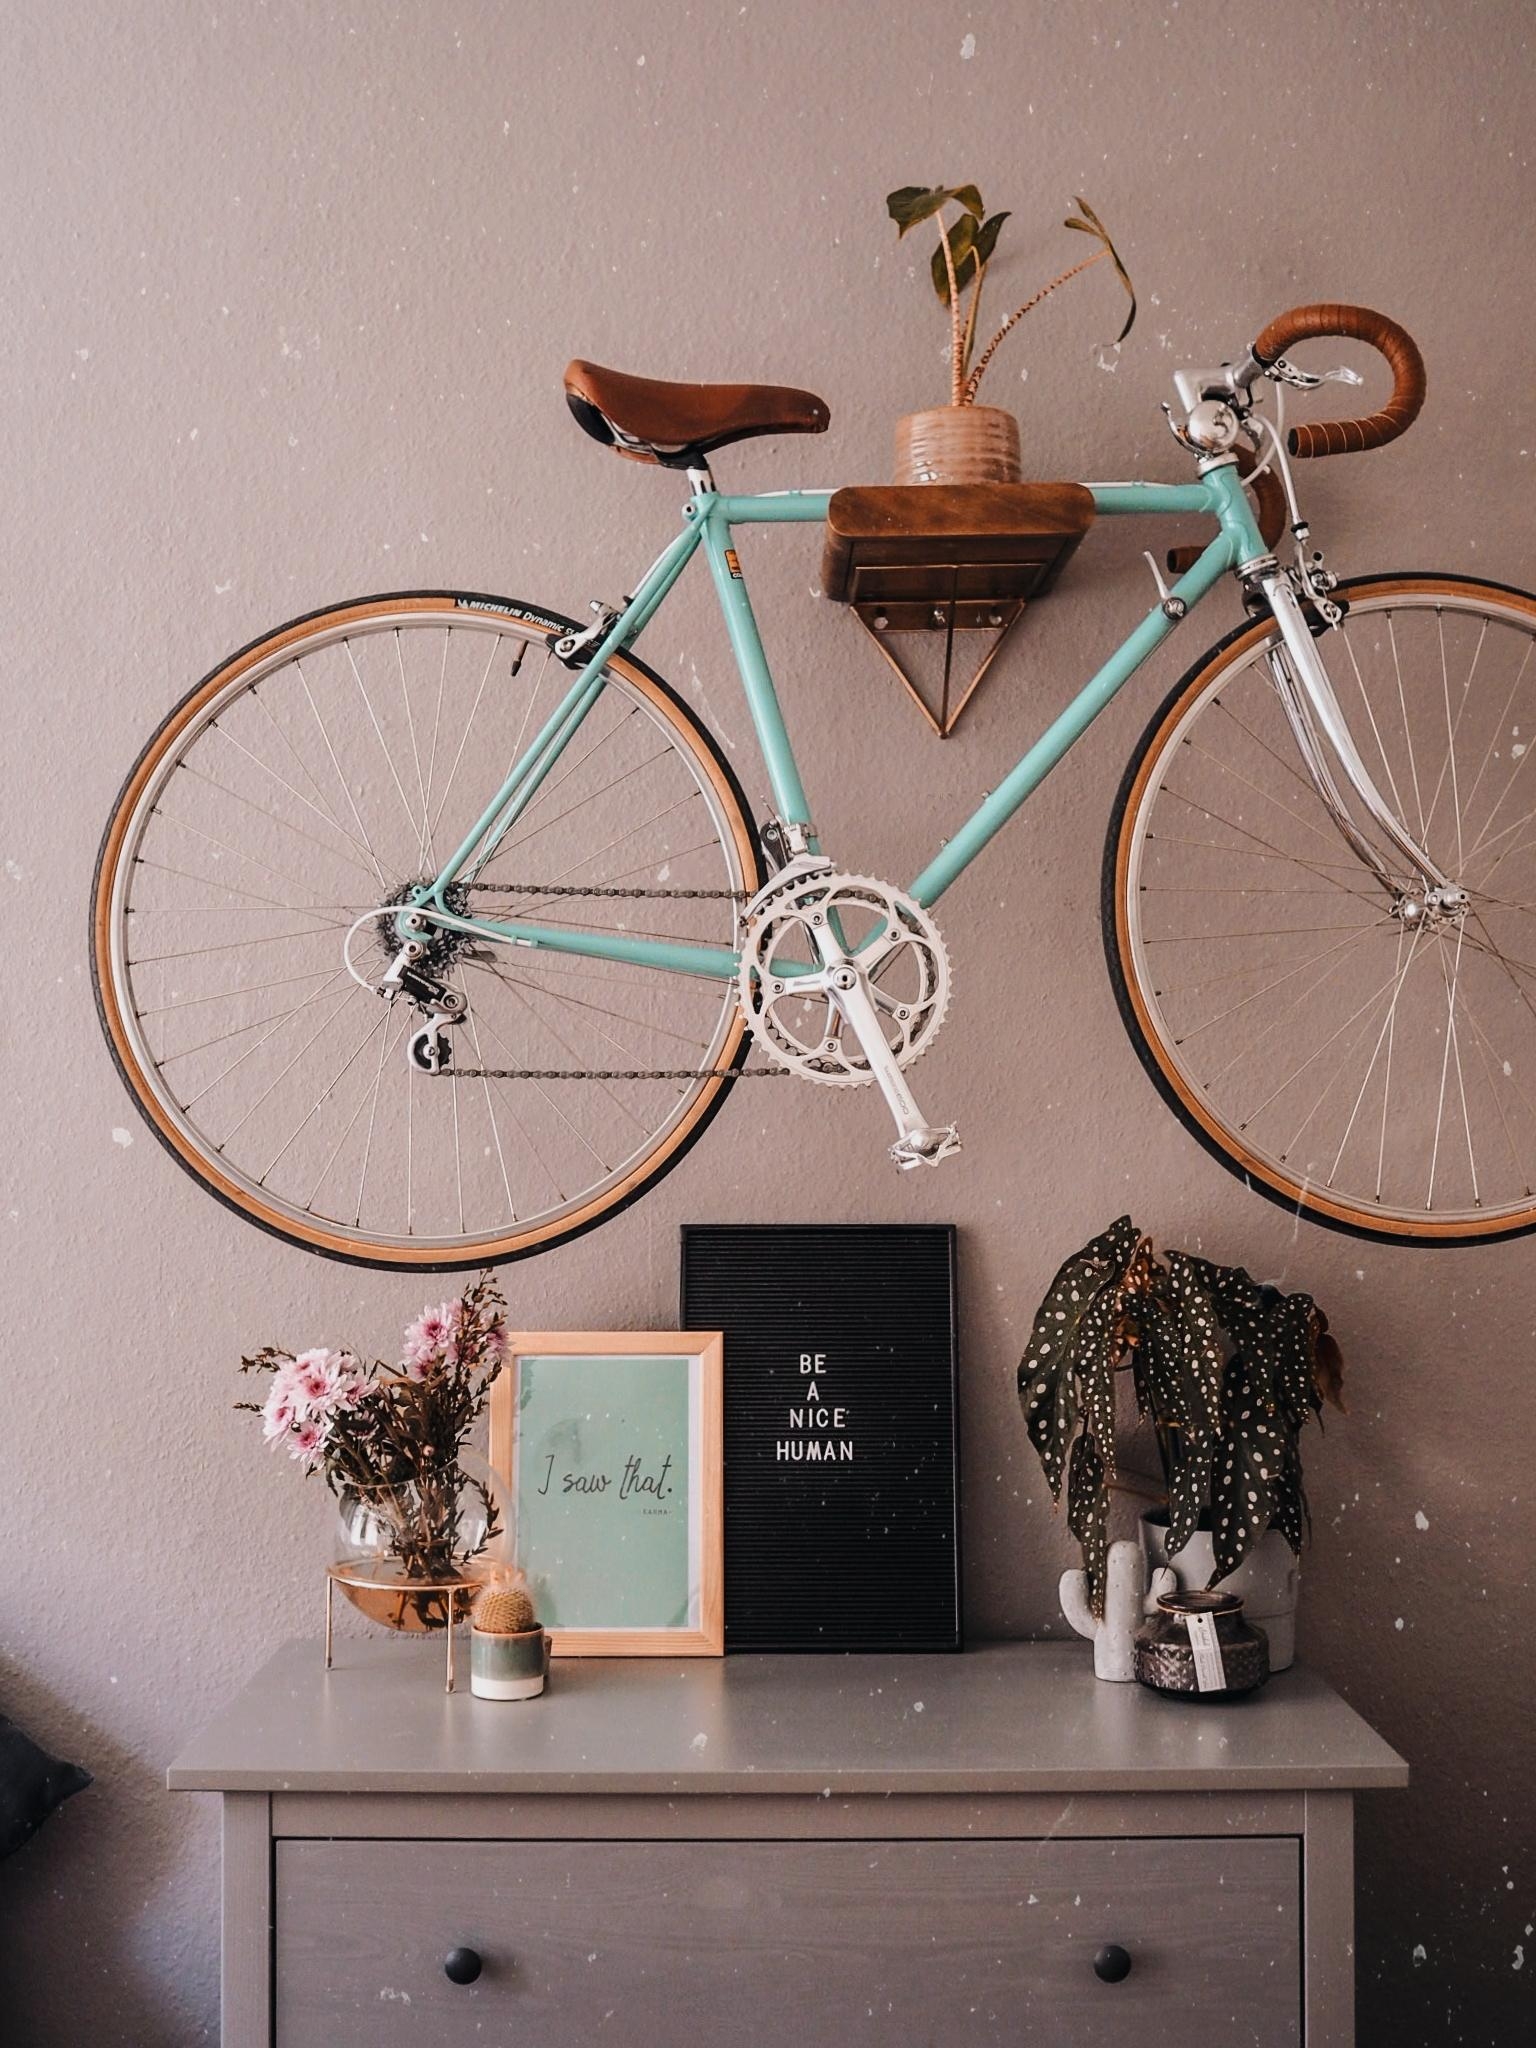 Die neue Wandfarbe gefällt mir ziemlich gut in der Kombi mit meinem Fahrrad. 
#velo #grauewand #plants